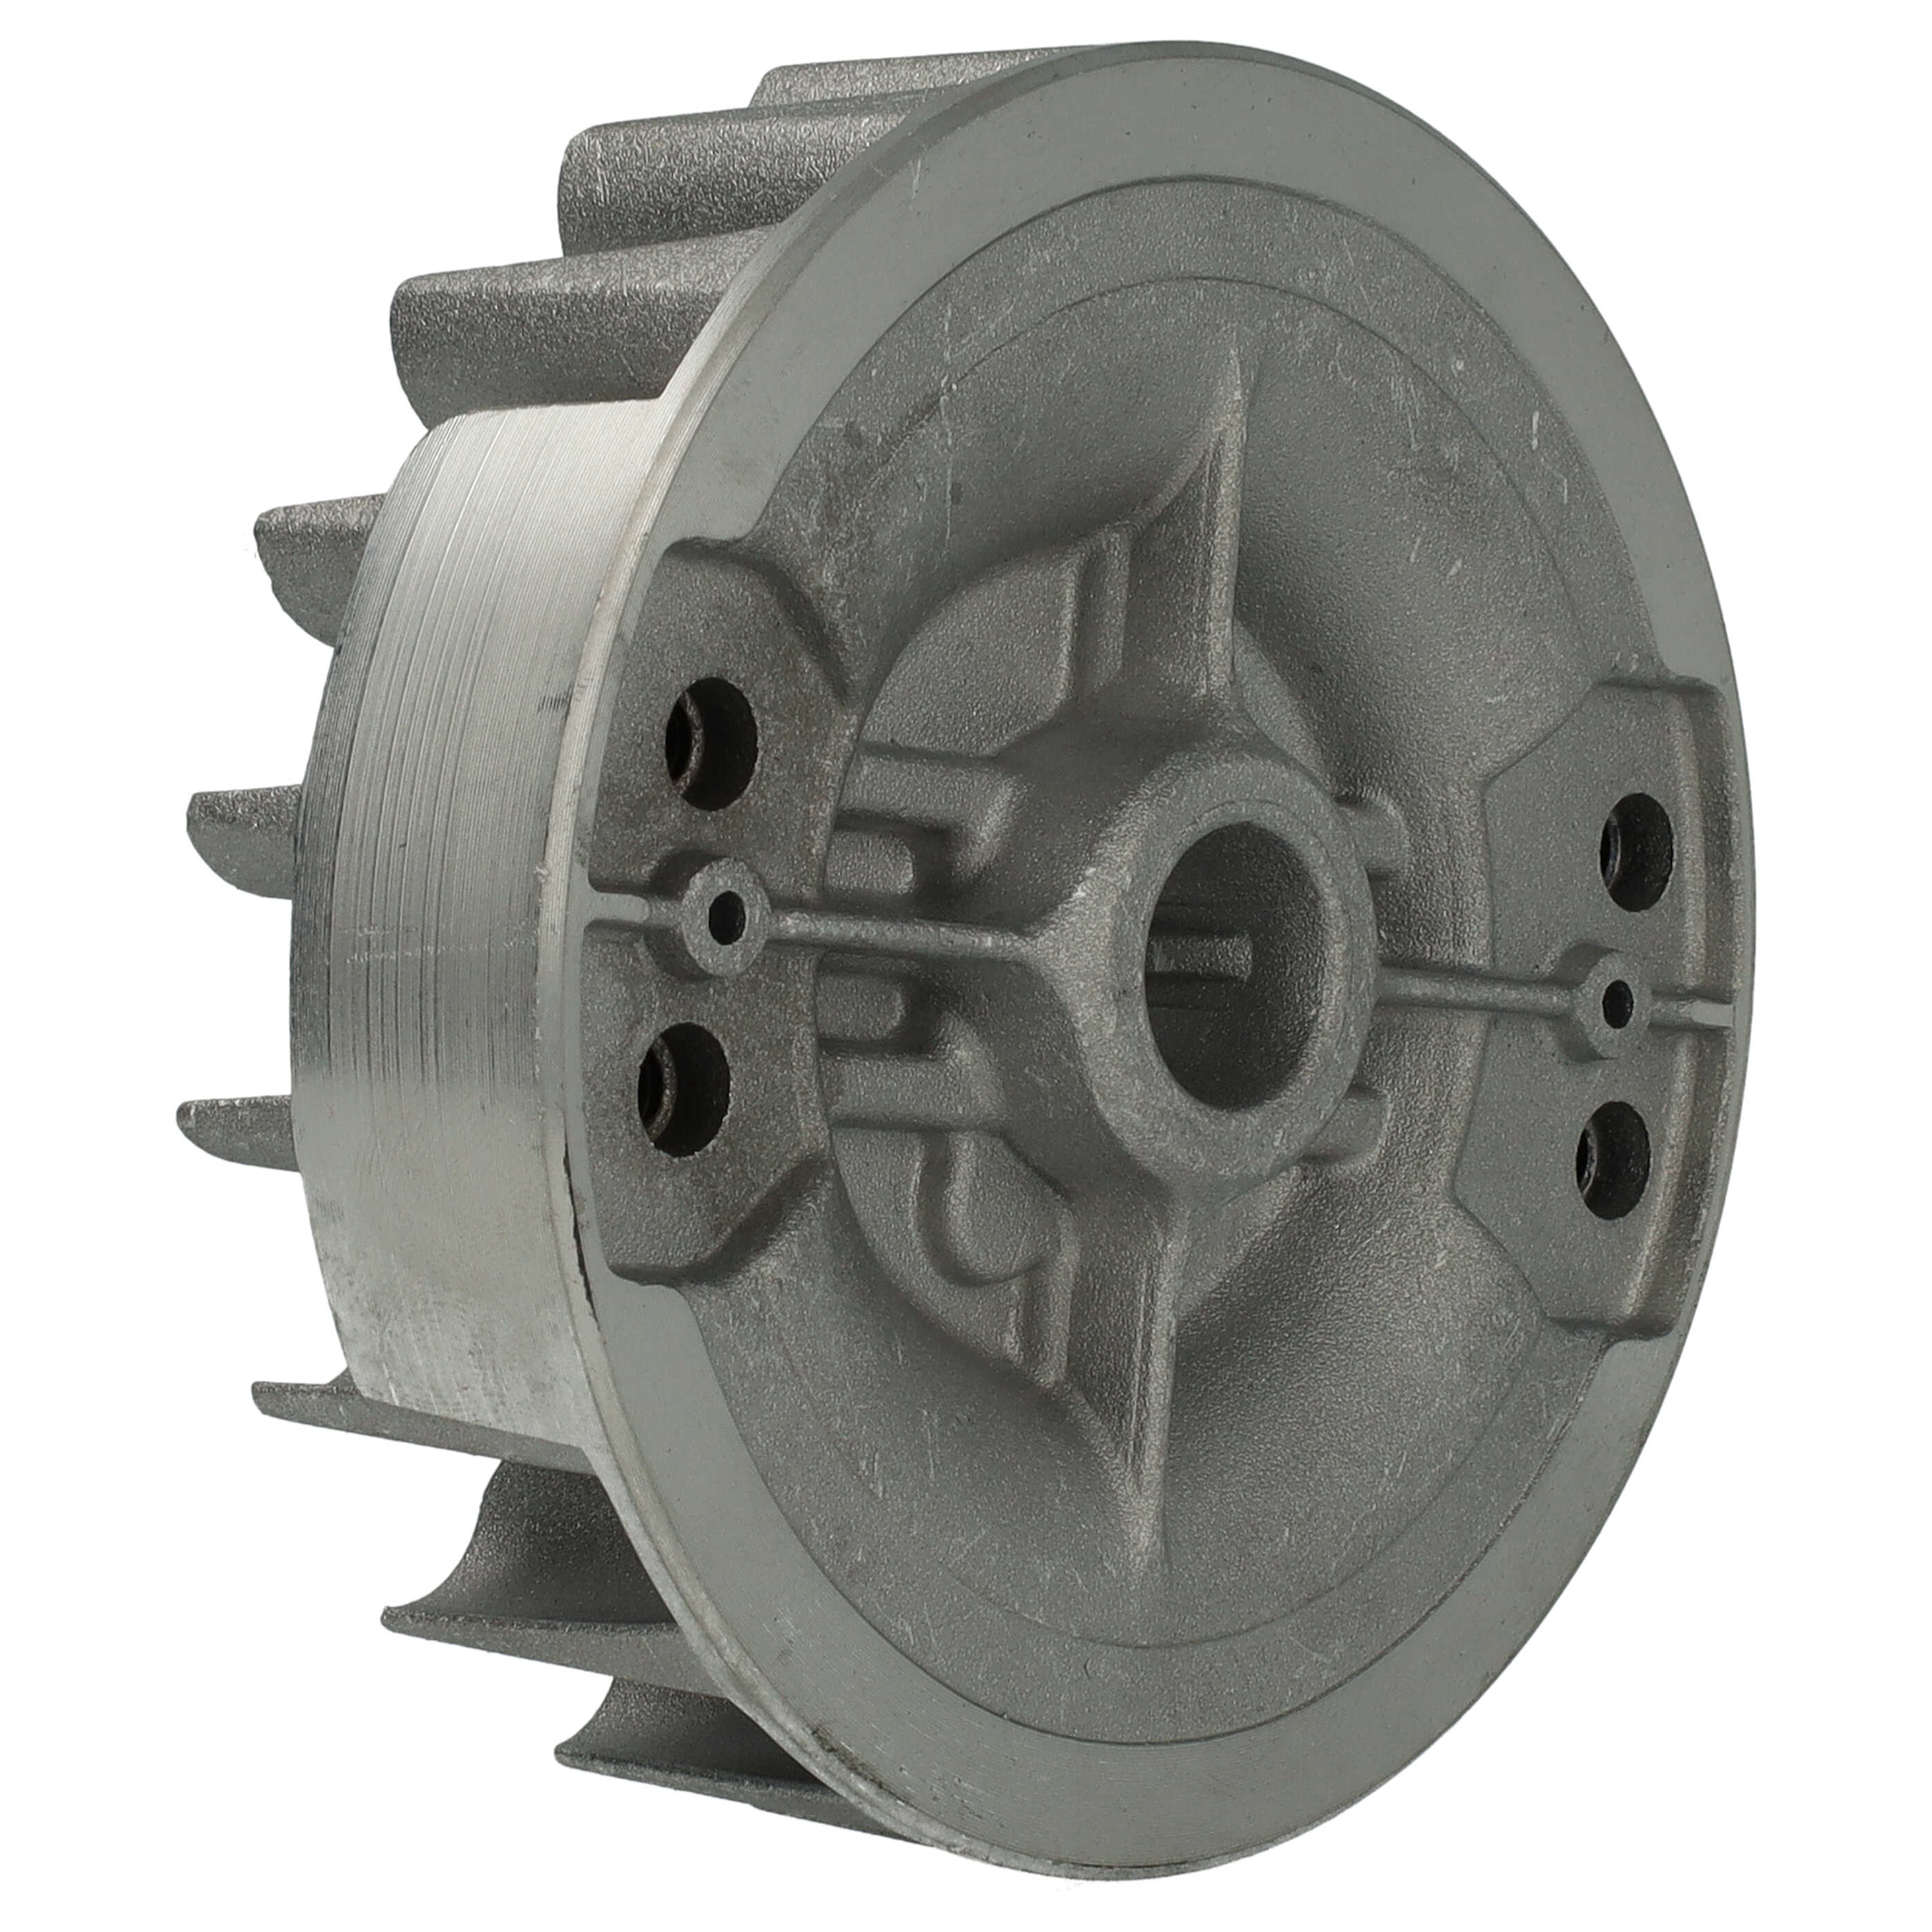 Flywheel, Fan Wheel, Fan Impeller as Replacement for Stihl 1143 400 1234, 1143 400 1201 - Flywheel, Fan Wheel 